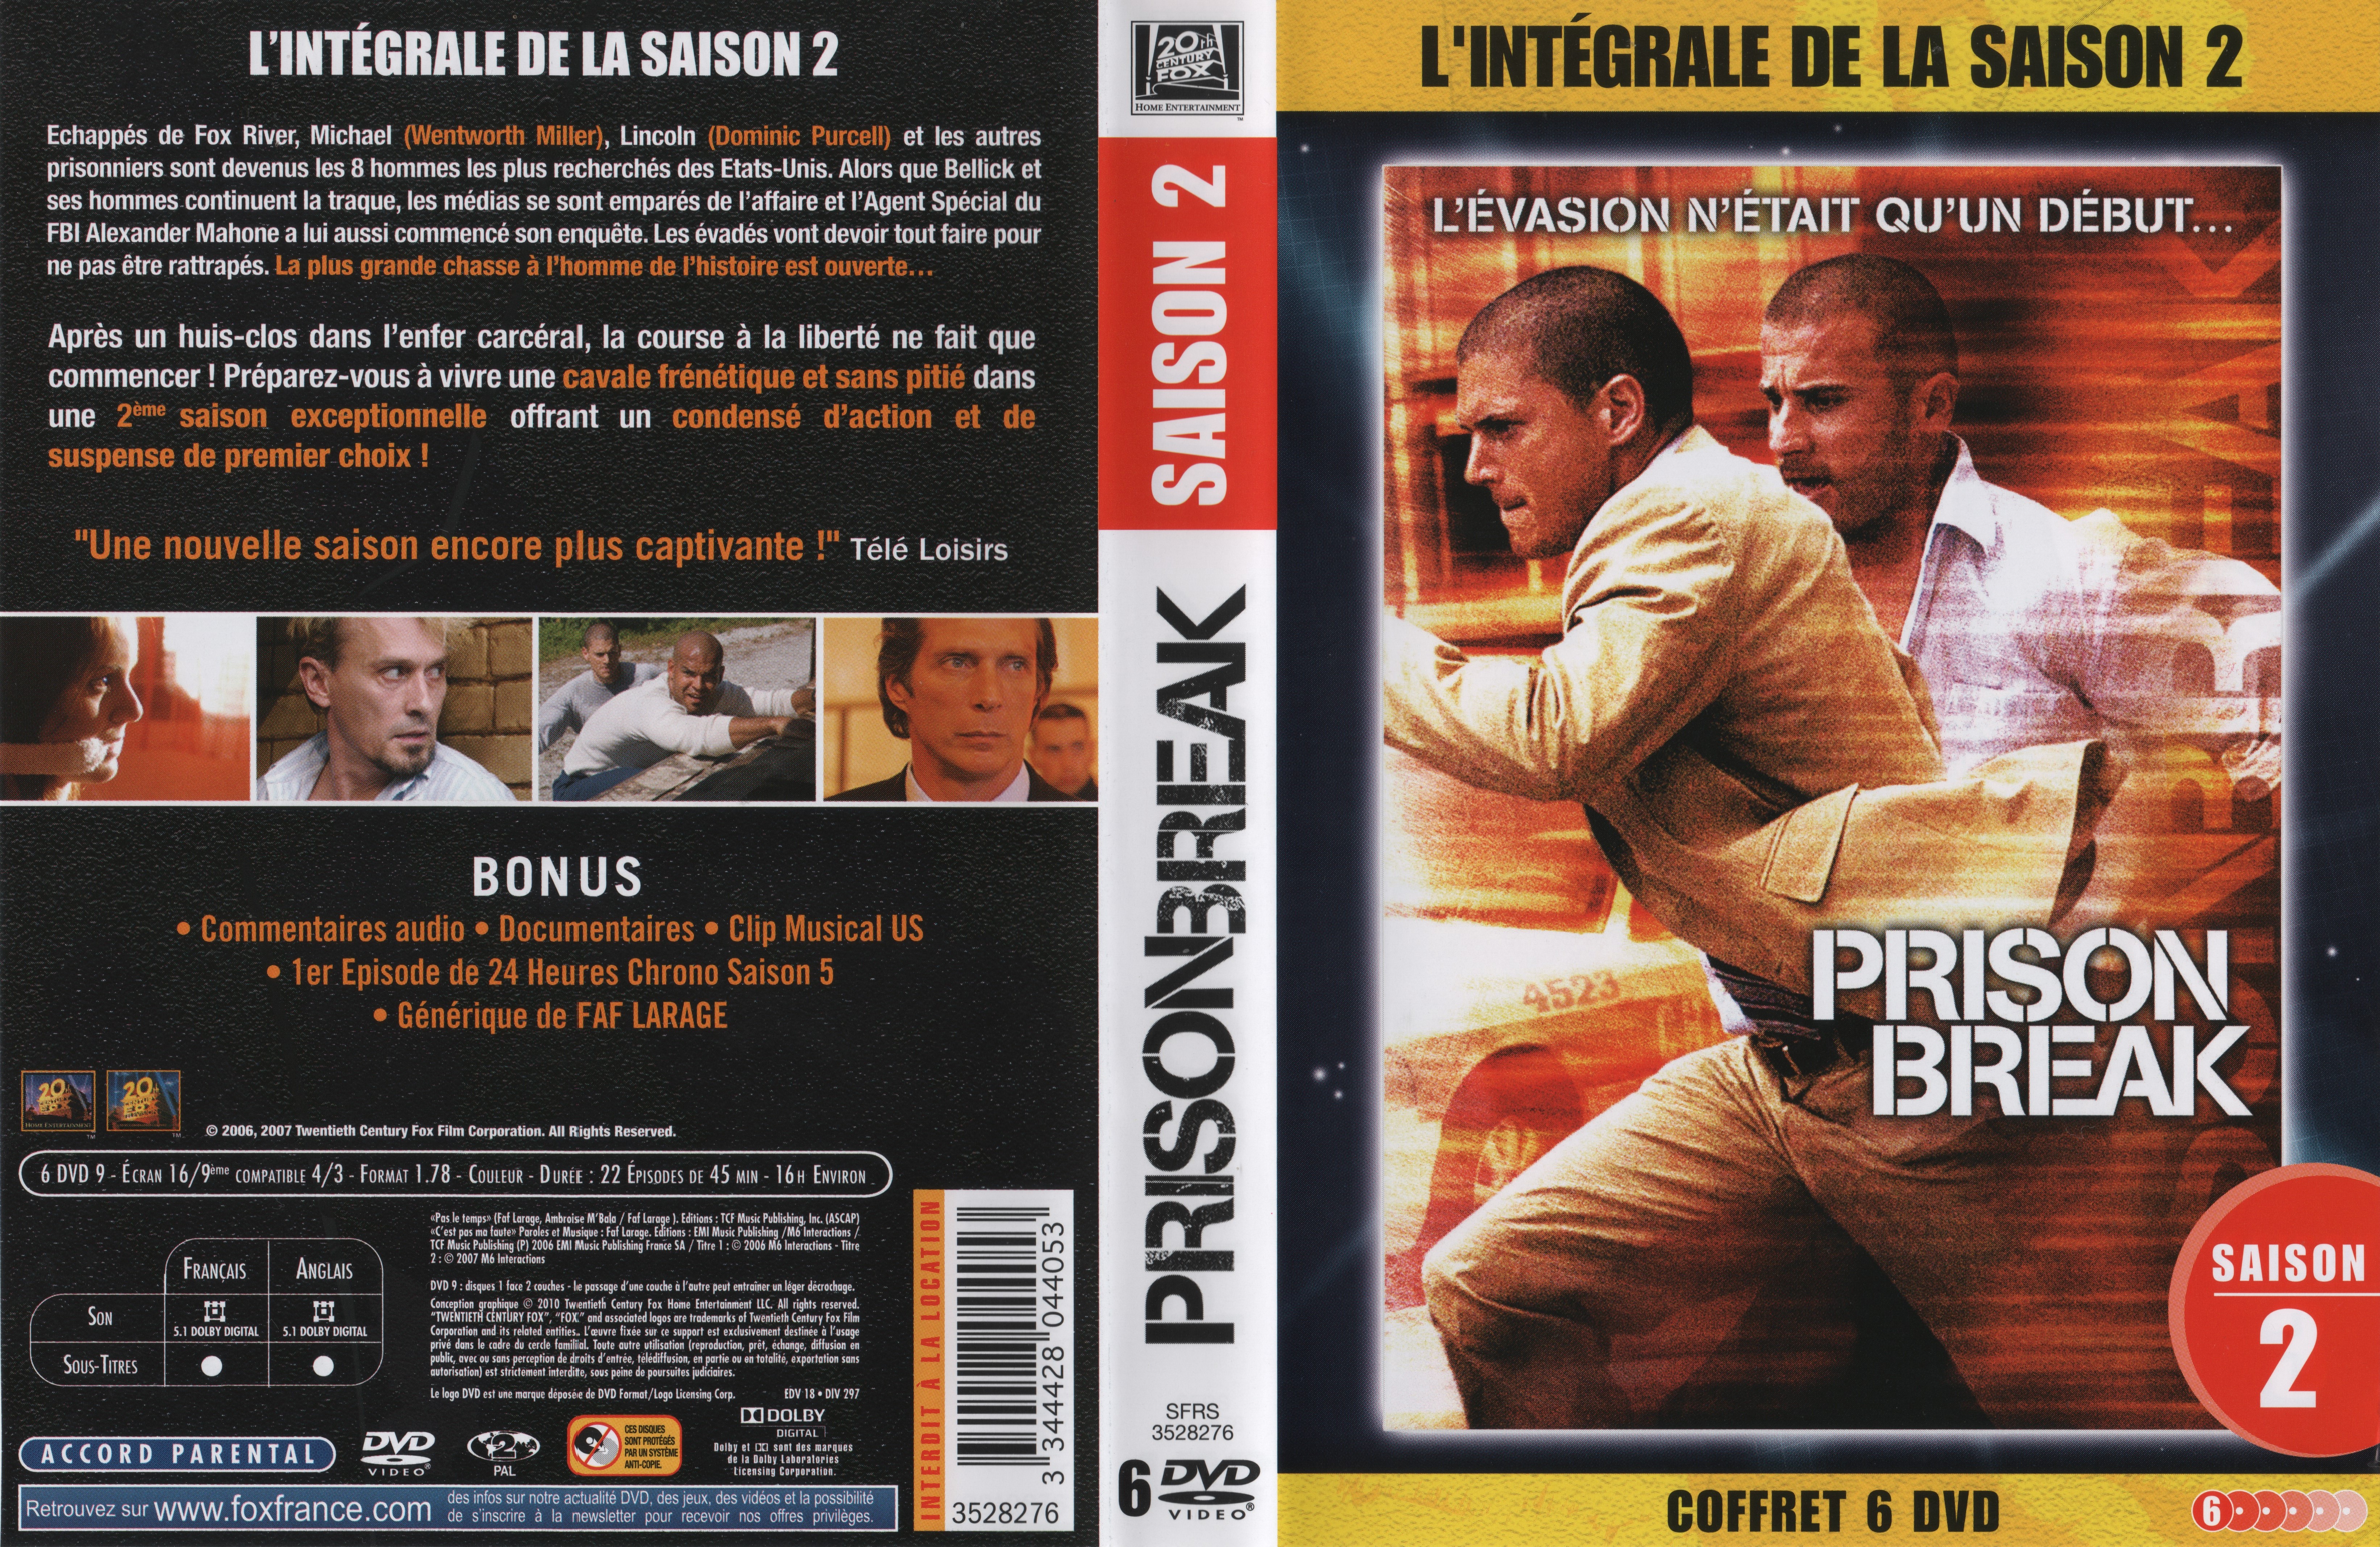 Jaquette DVD Prison break saison 2 COFFRET v2